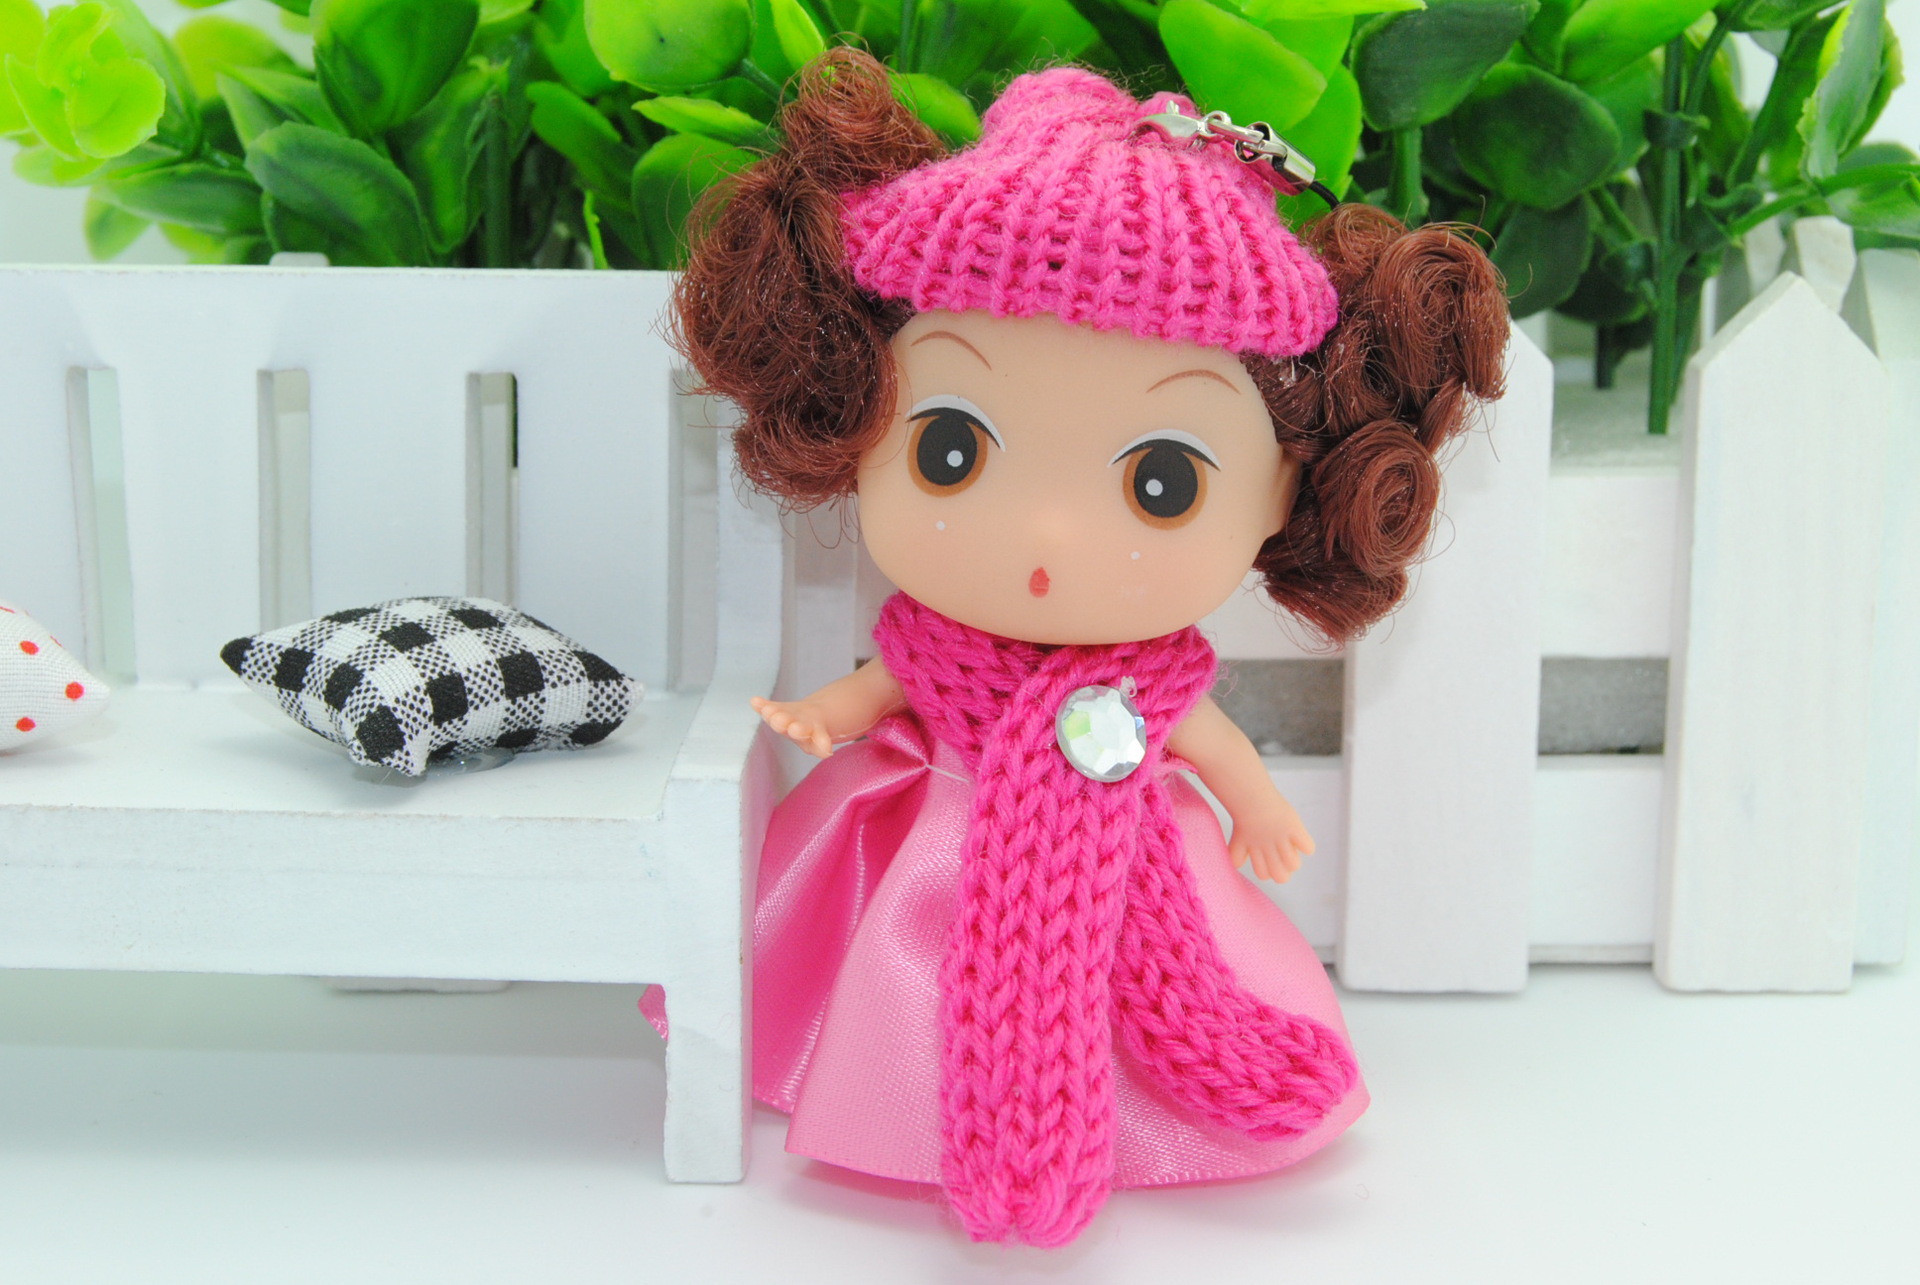 9cm迷糊娃娃 小女孩最爱 速卖通热卖可爱洋娃娃 支持一件代发图片